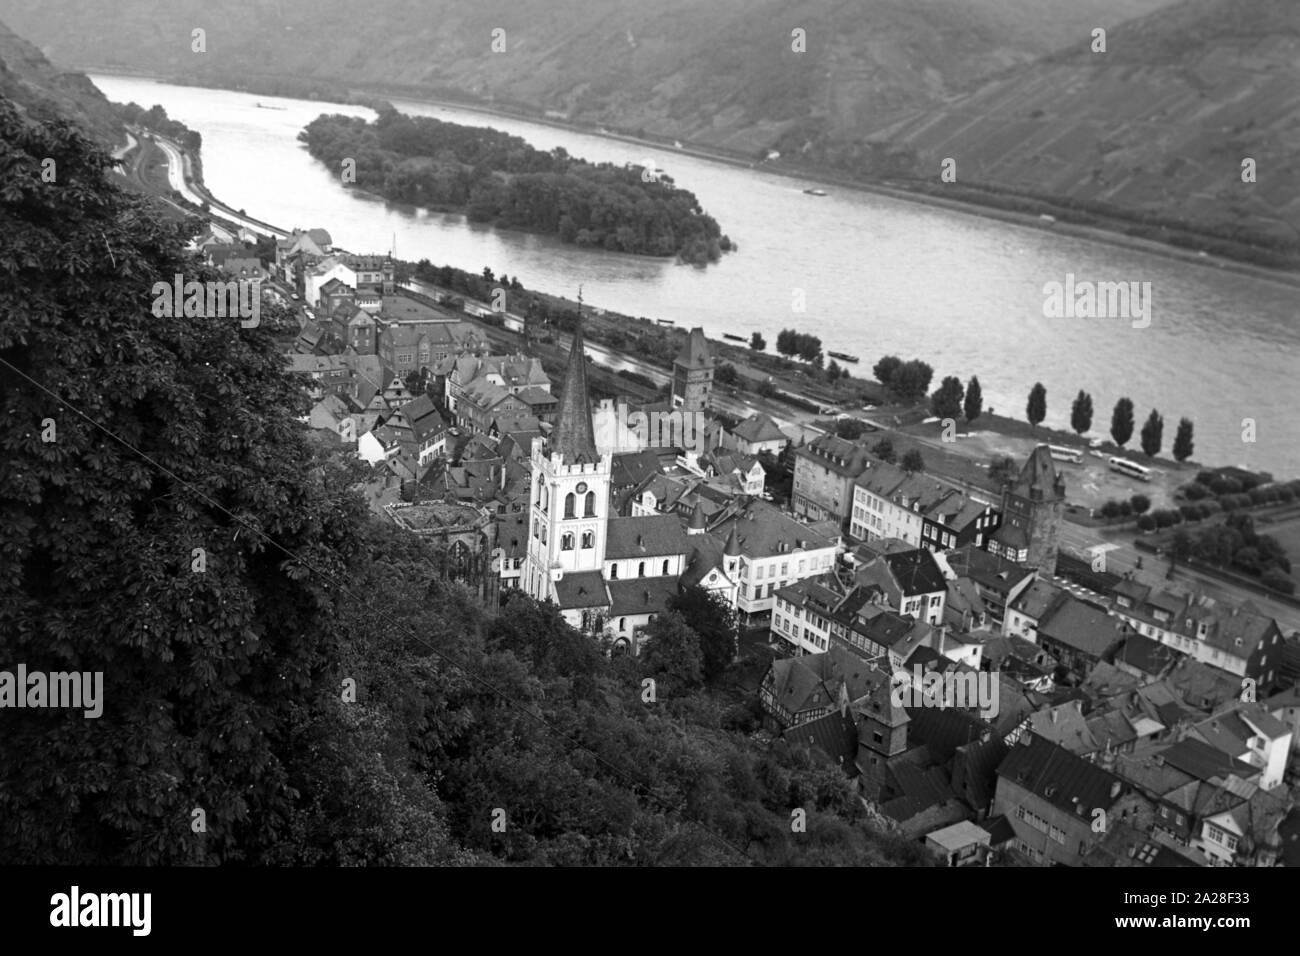 Blick auf die Stadt Bacharach mit der Bacharacher Werth Insel im Rhein, Deutschland 1968. View to the city of Bacharach with the Rhine island Bacharacher Werth, Germany 1968. Stock Photo